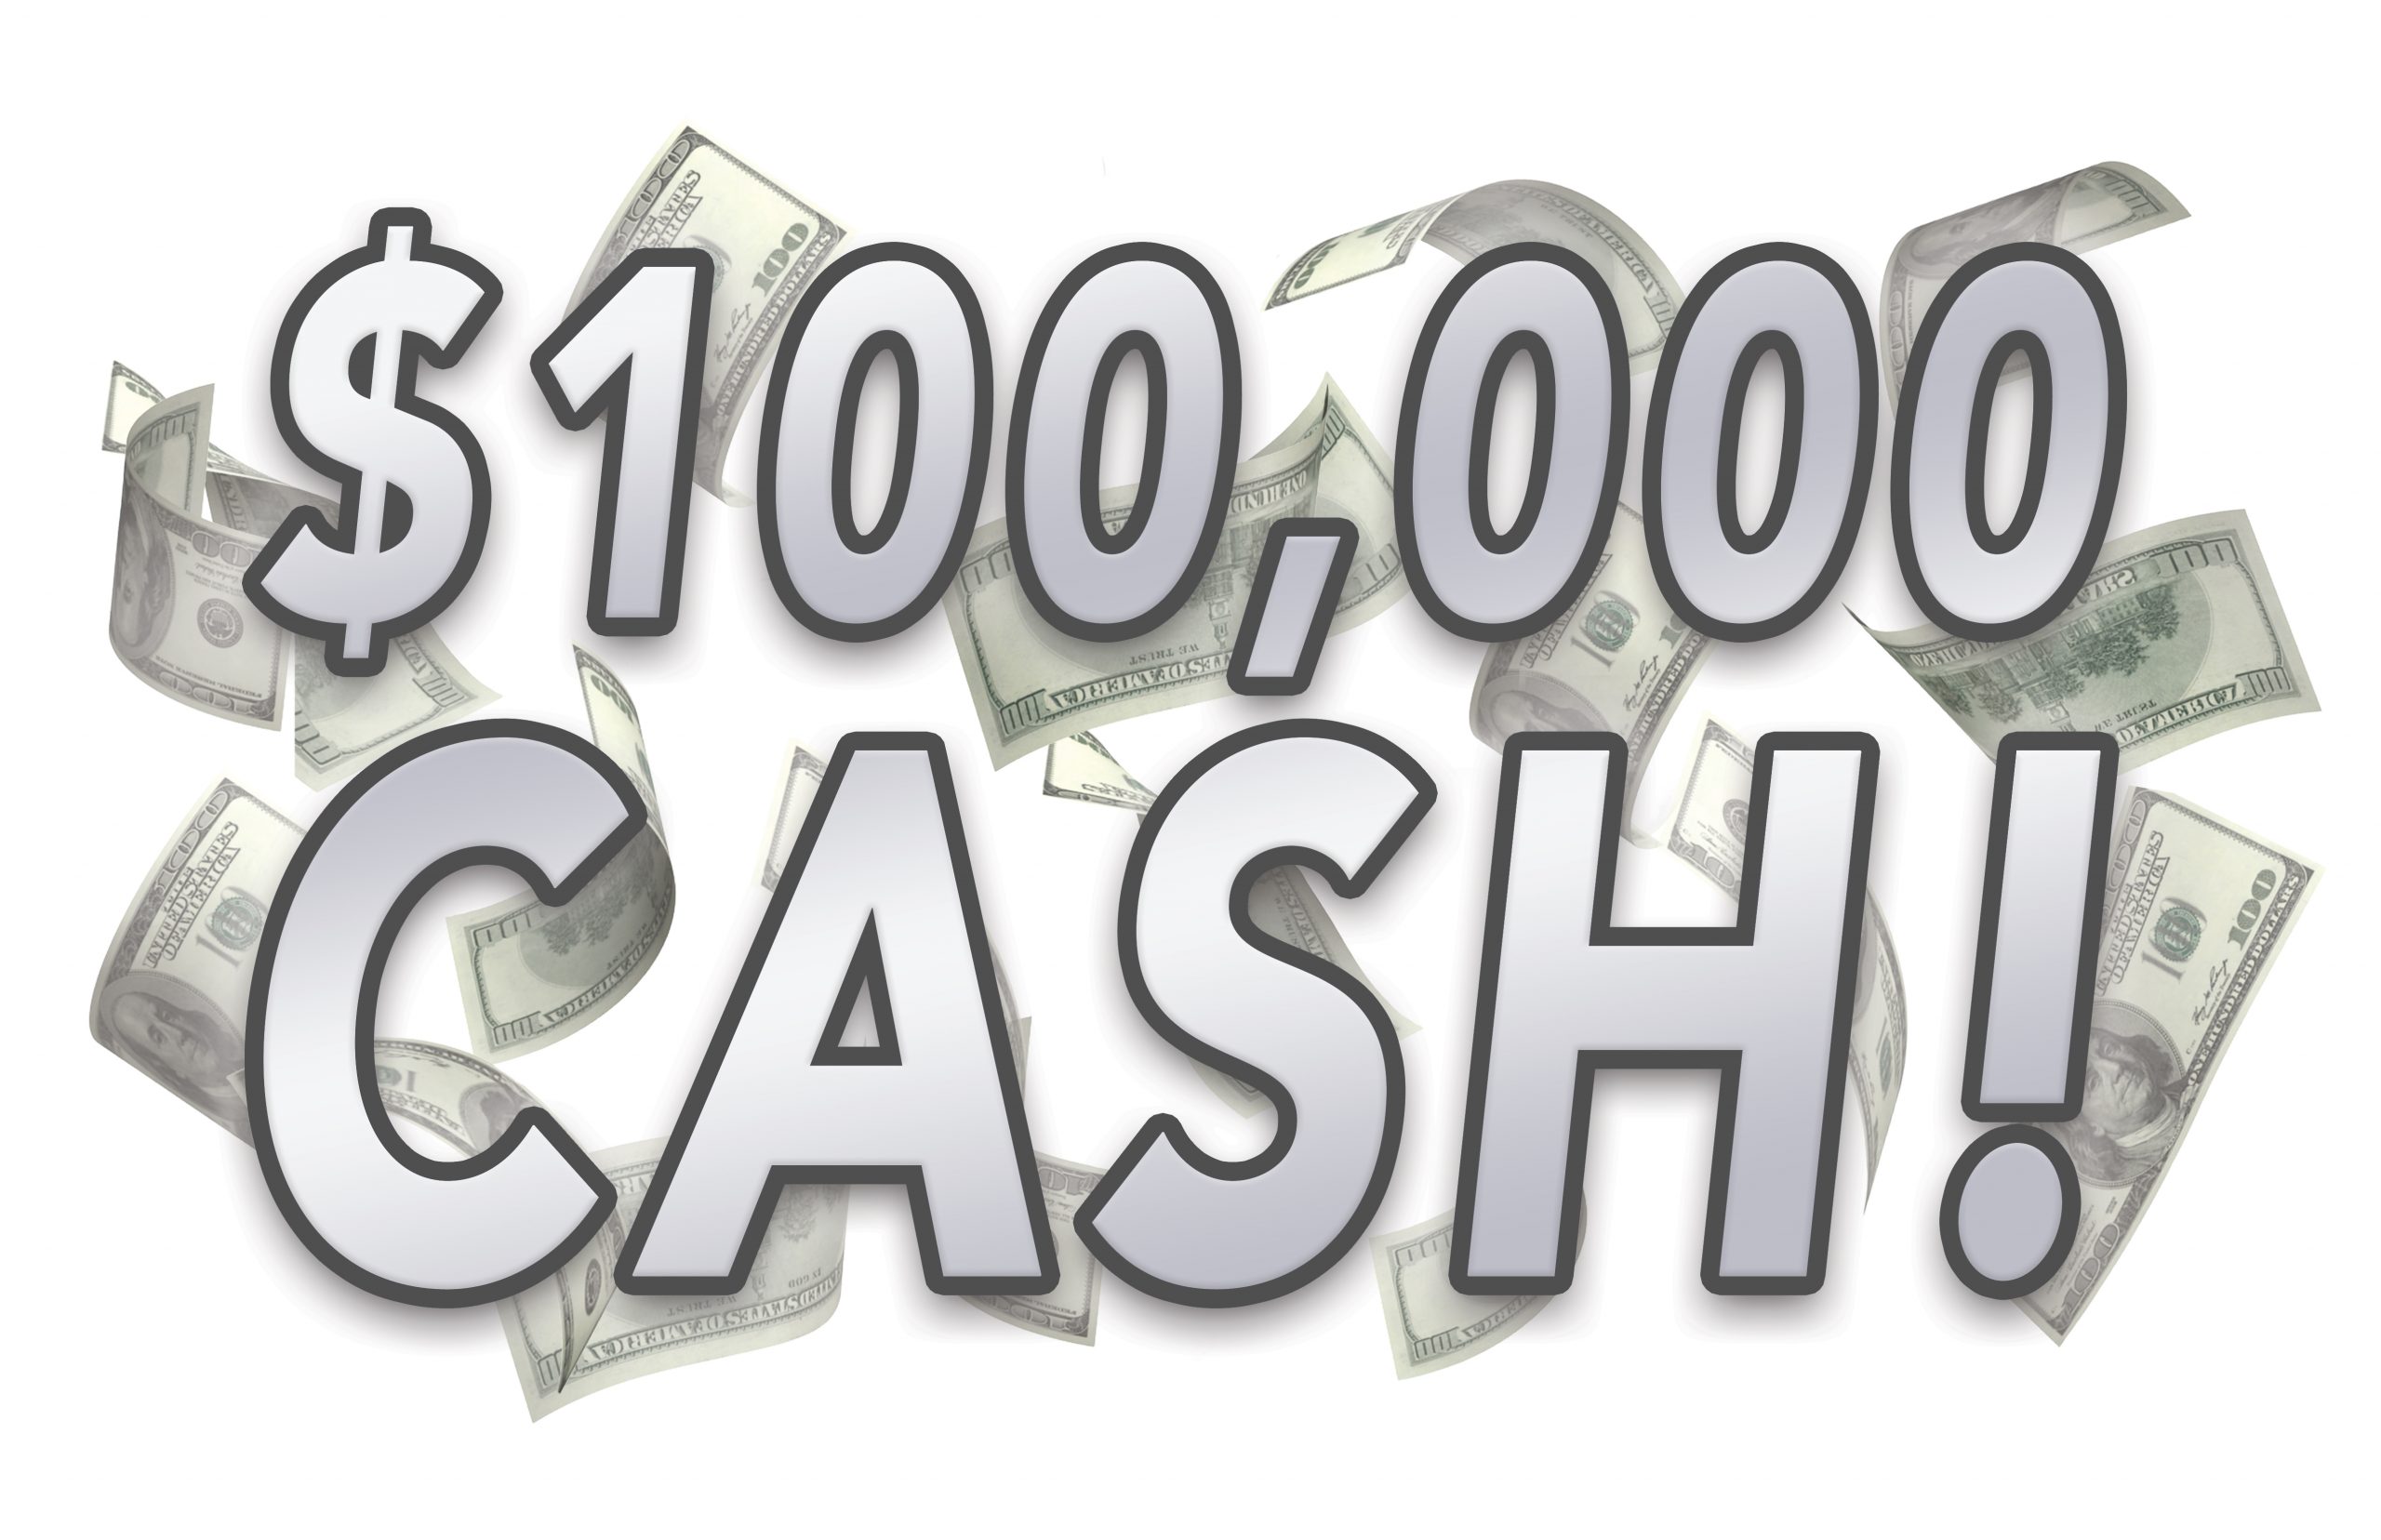 $100,000 Cash